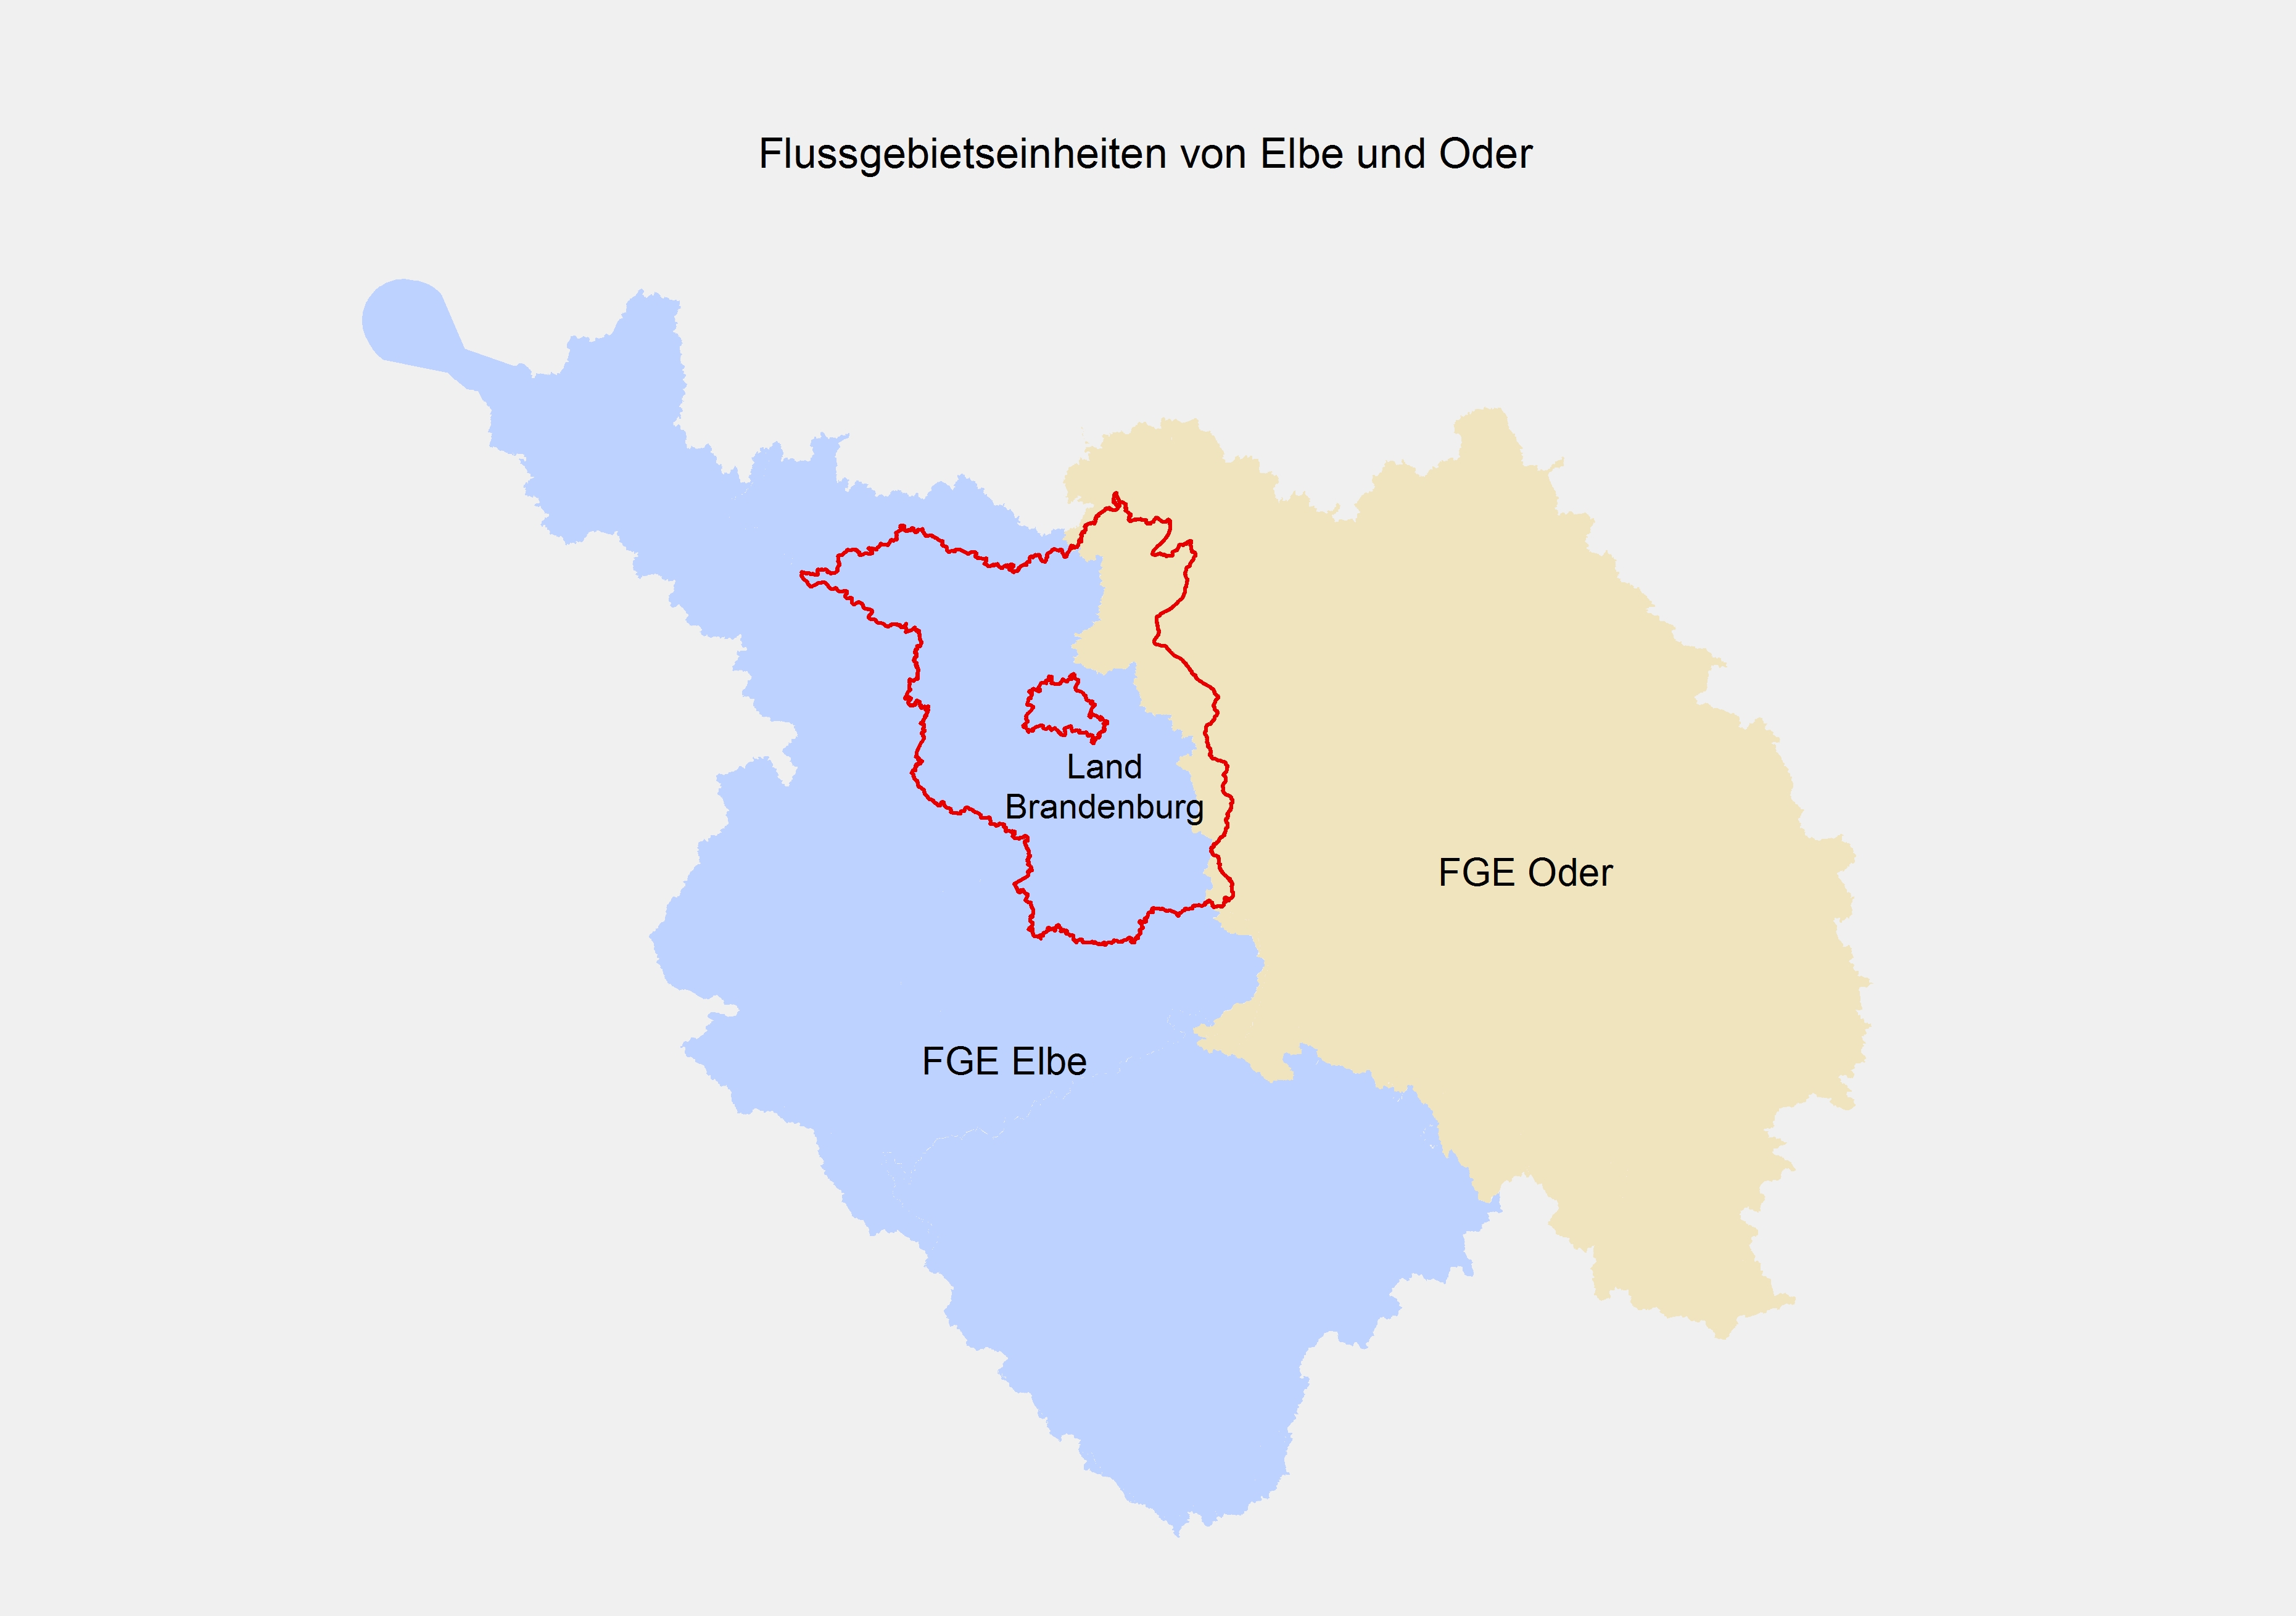 Karte Land Brandenburg und die Flussgebietseinheiten von Elbe und Oder.   